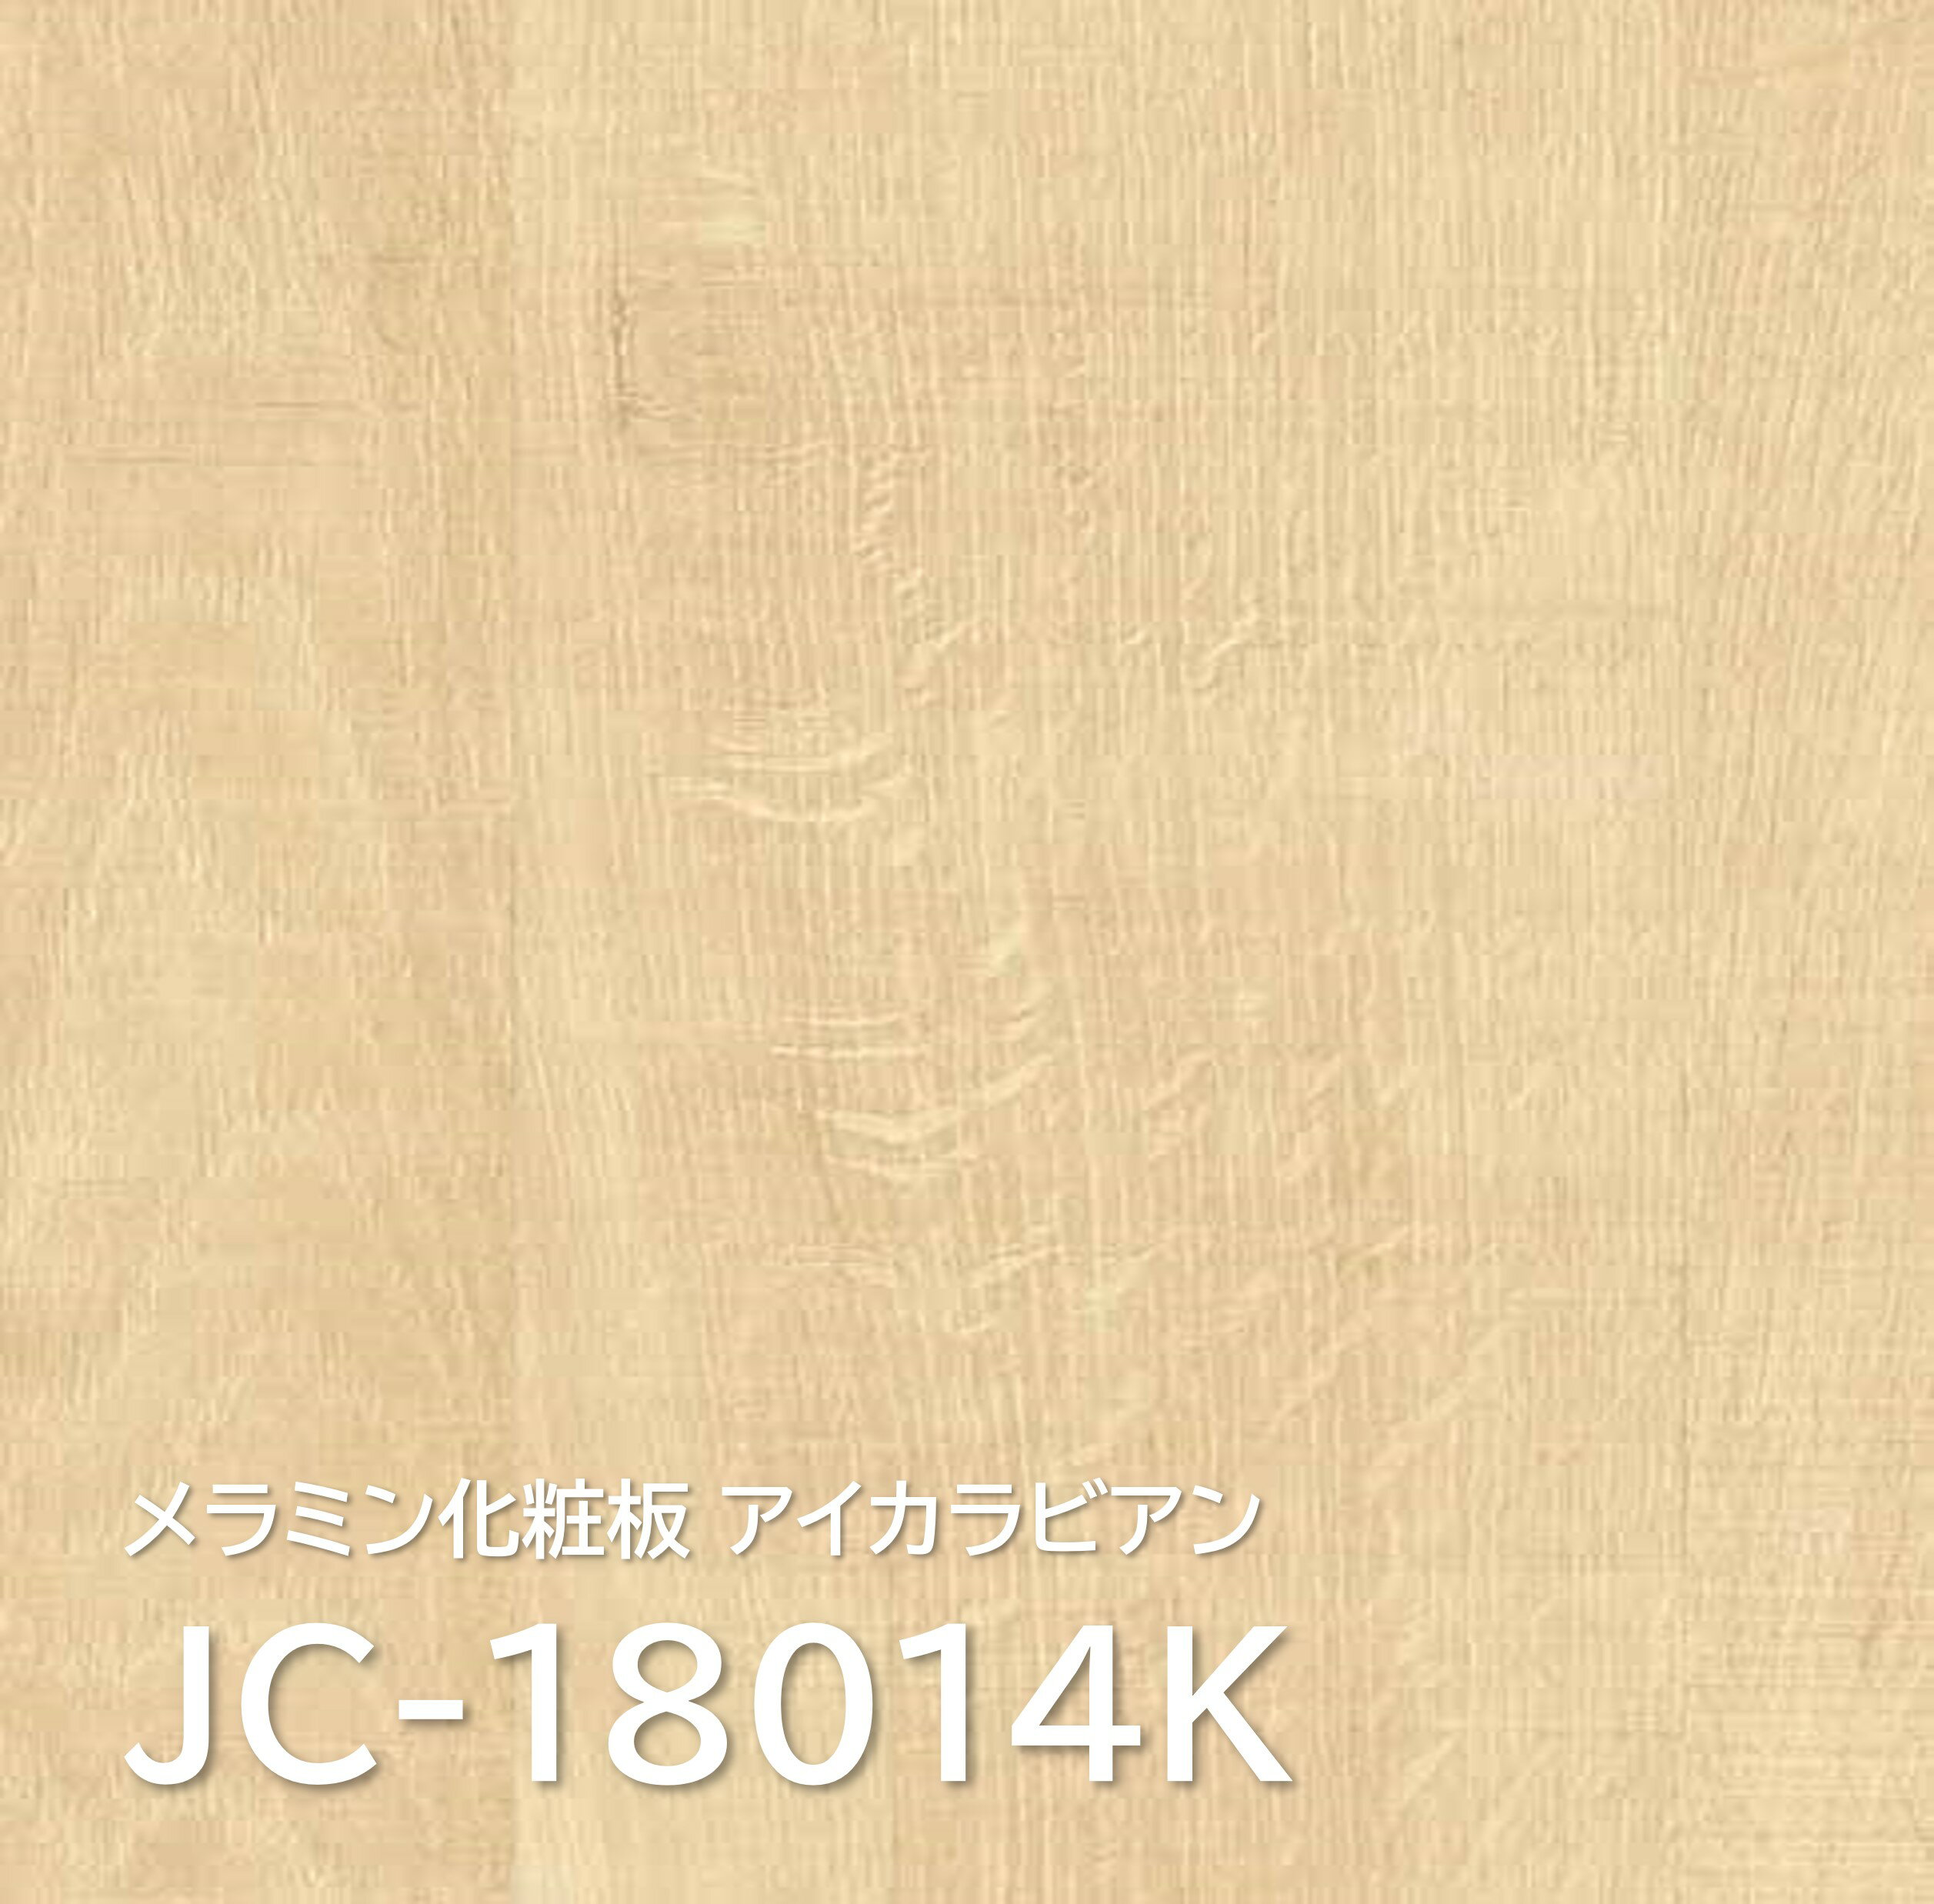 ~ϔ JC-18014K 3~6 0.95mm 935~1850mm ACJrA I[N vNg